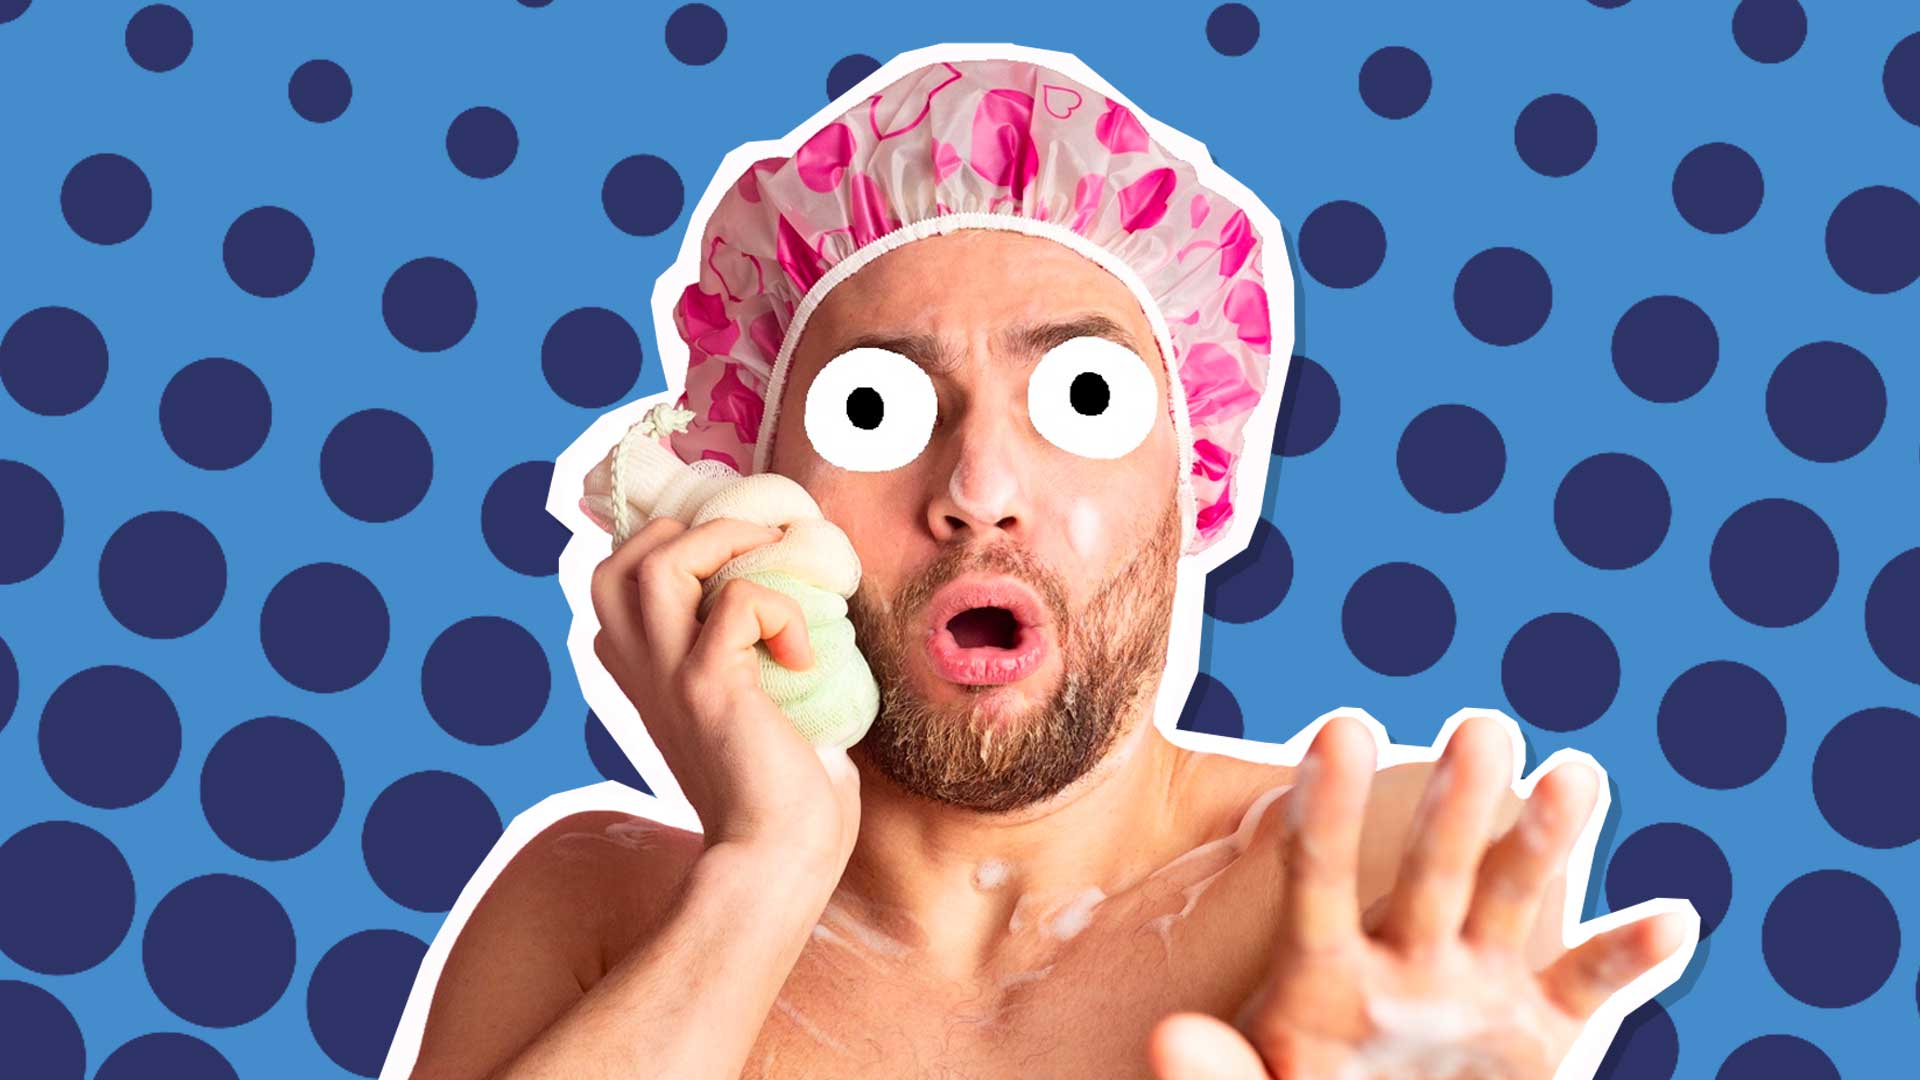 A man in a shower cap